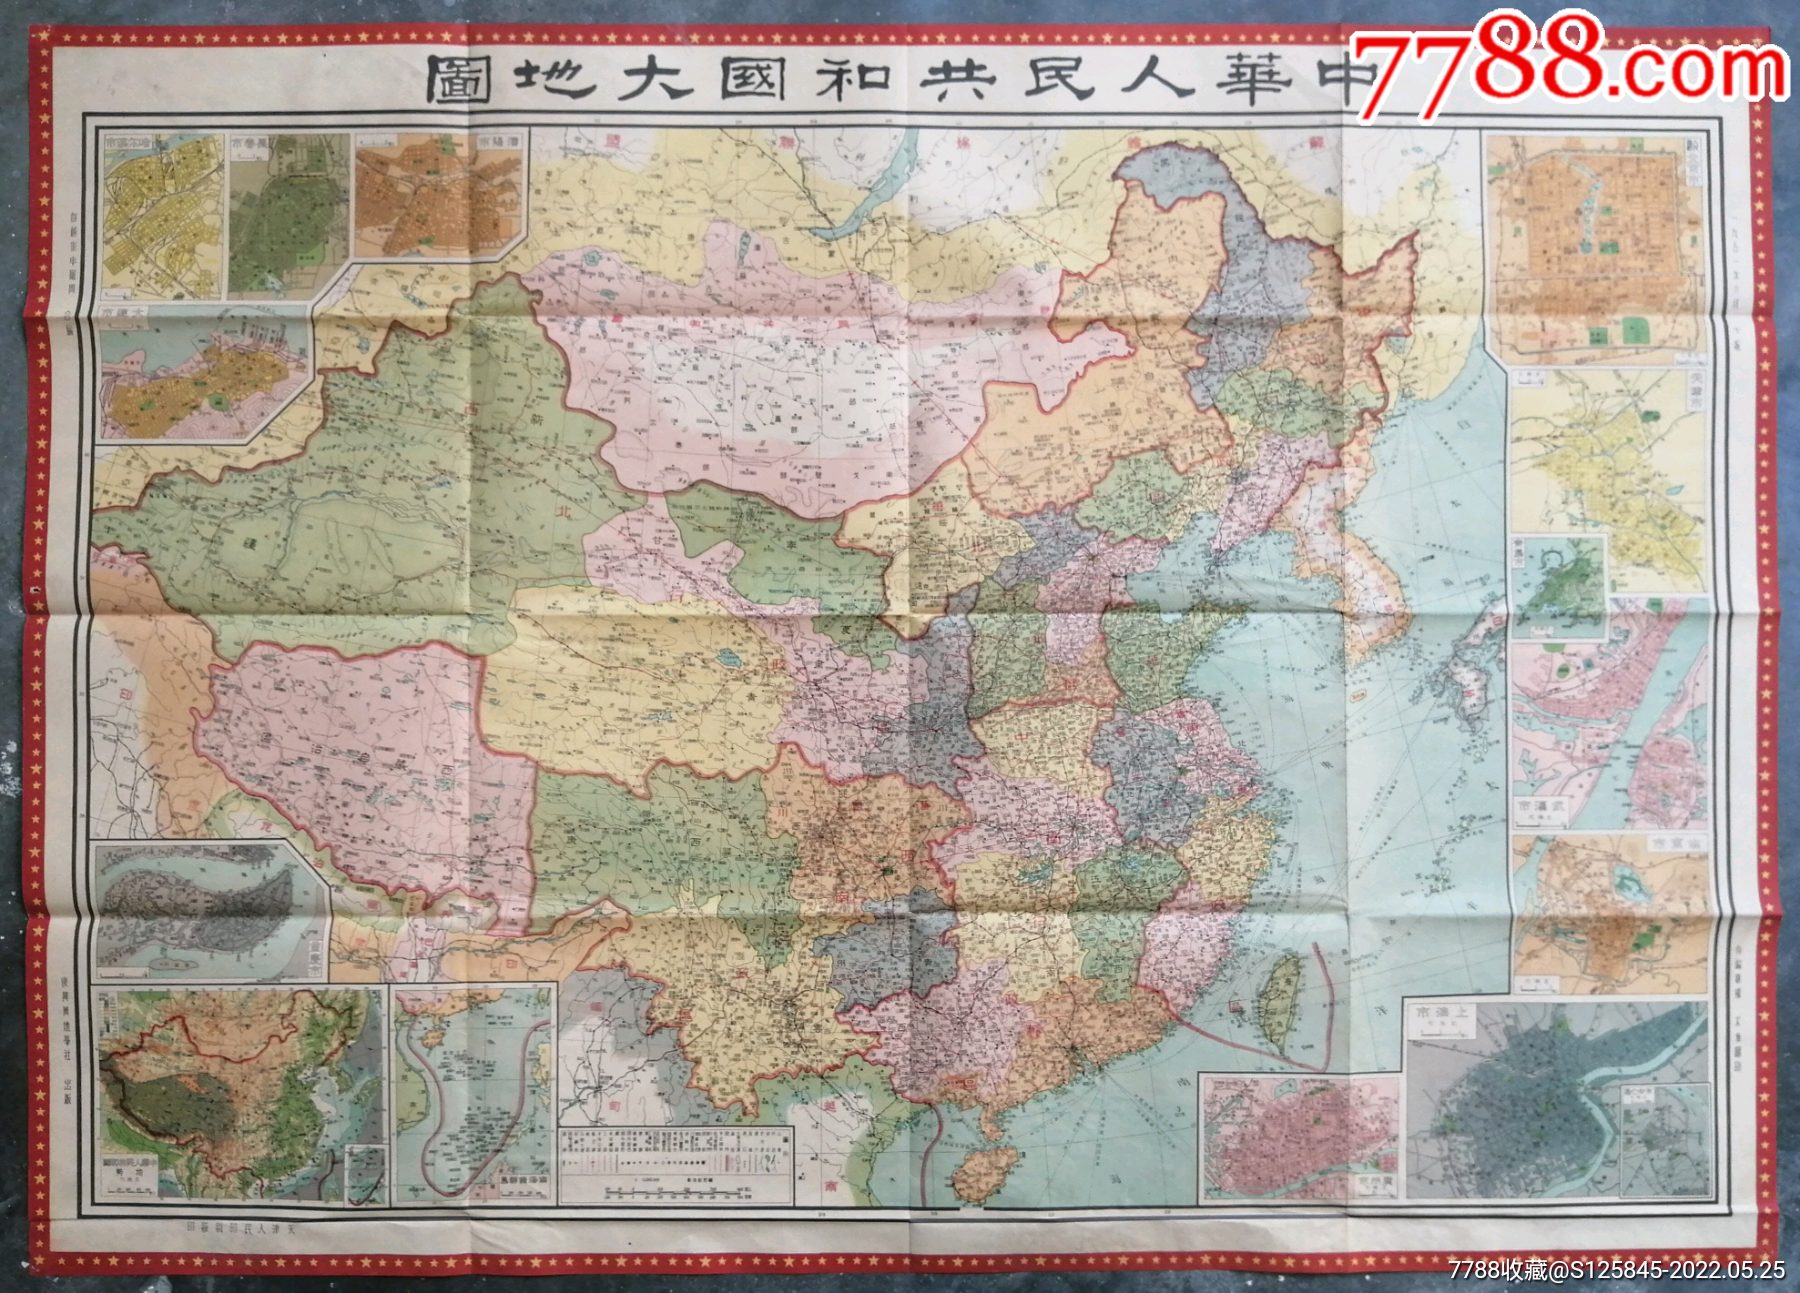 1951年《中华人民共和国大地图》,此图非常漂亮,稀见